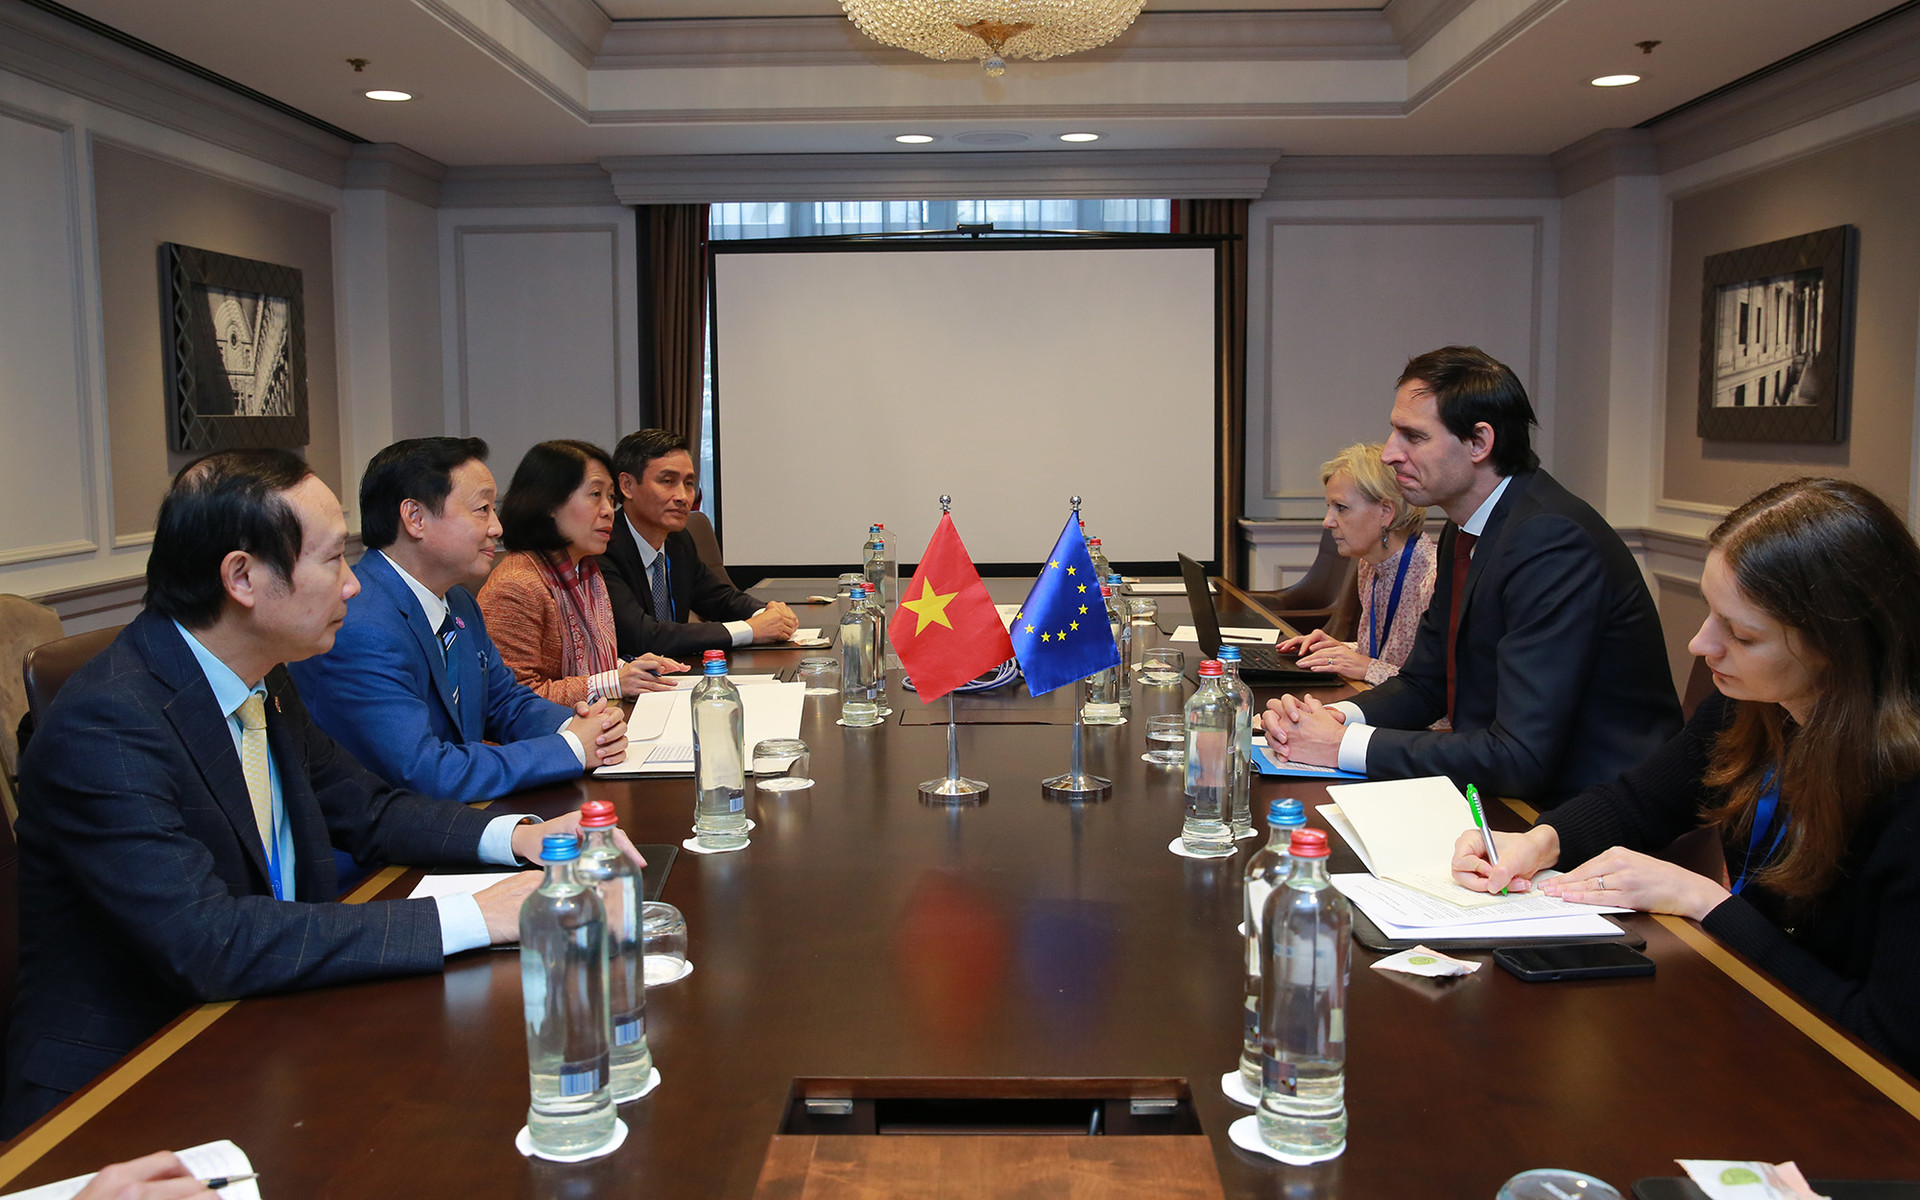 Đẩy mạnh, làm sâu sắc khuôn khổ đối tác và hợp tác toàn diện Việt Nam-EU - Ảnh 4.